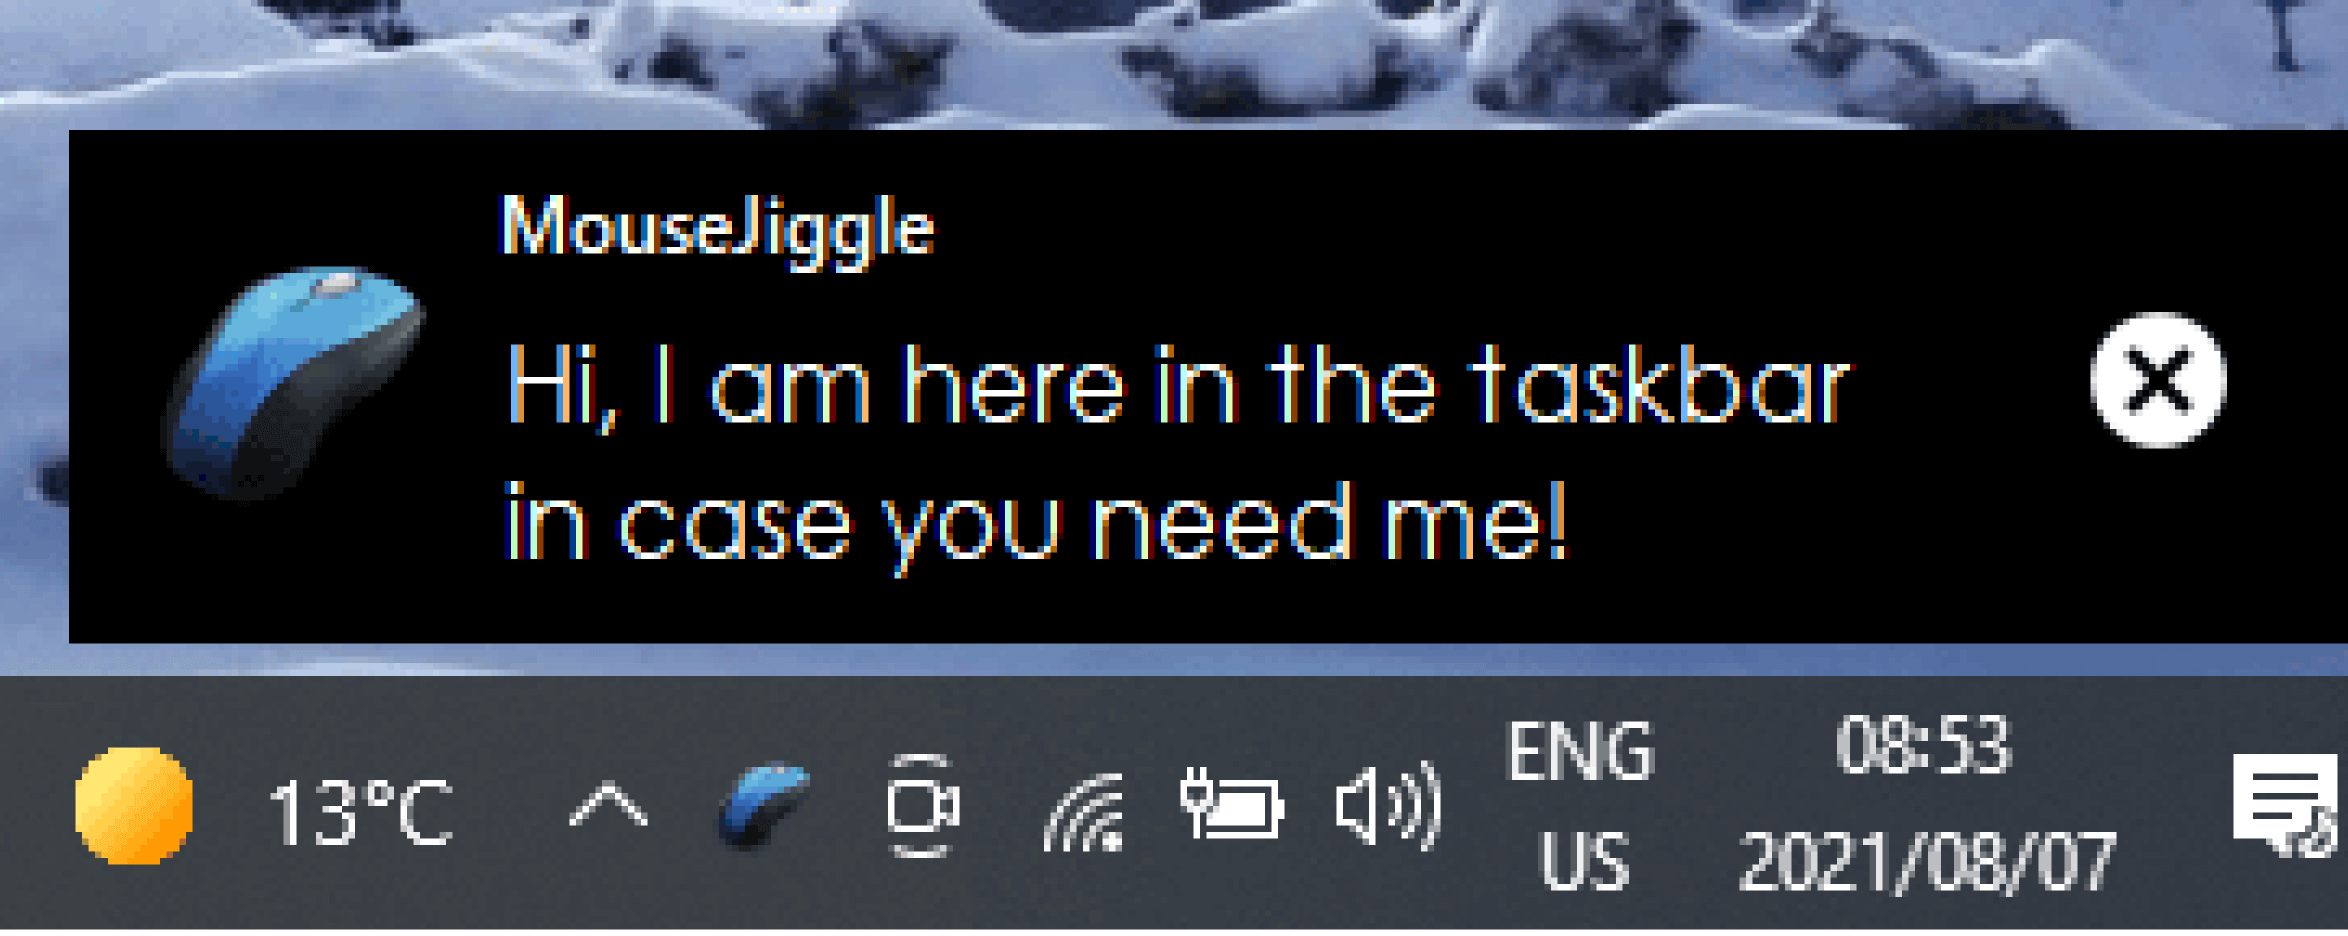 MouseJiggle sarà installato nella barra delle applicazioni in basso a destra dello schermo.